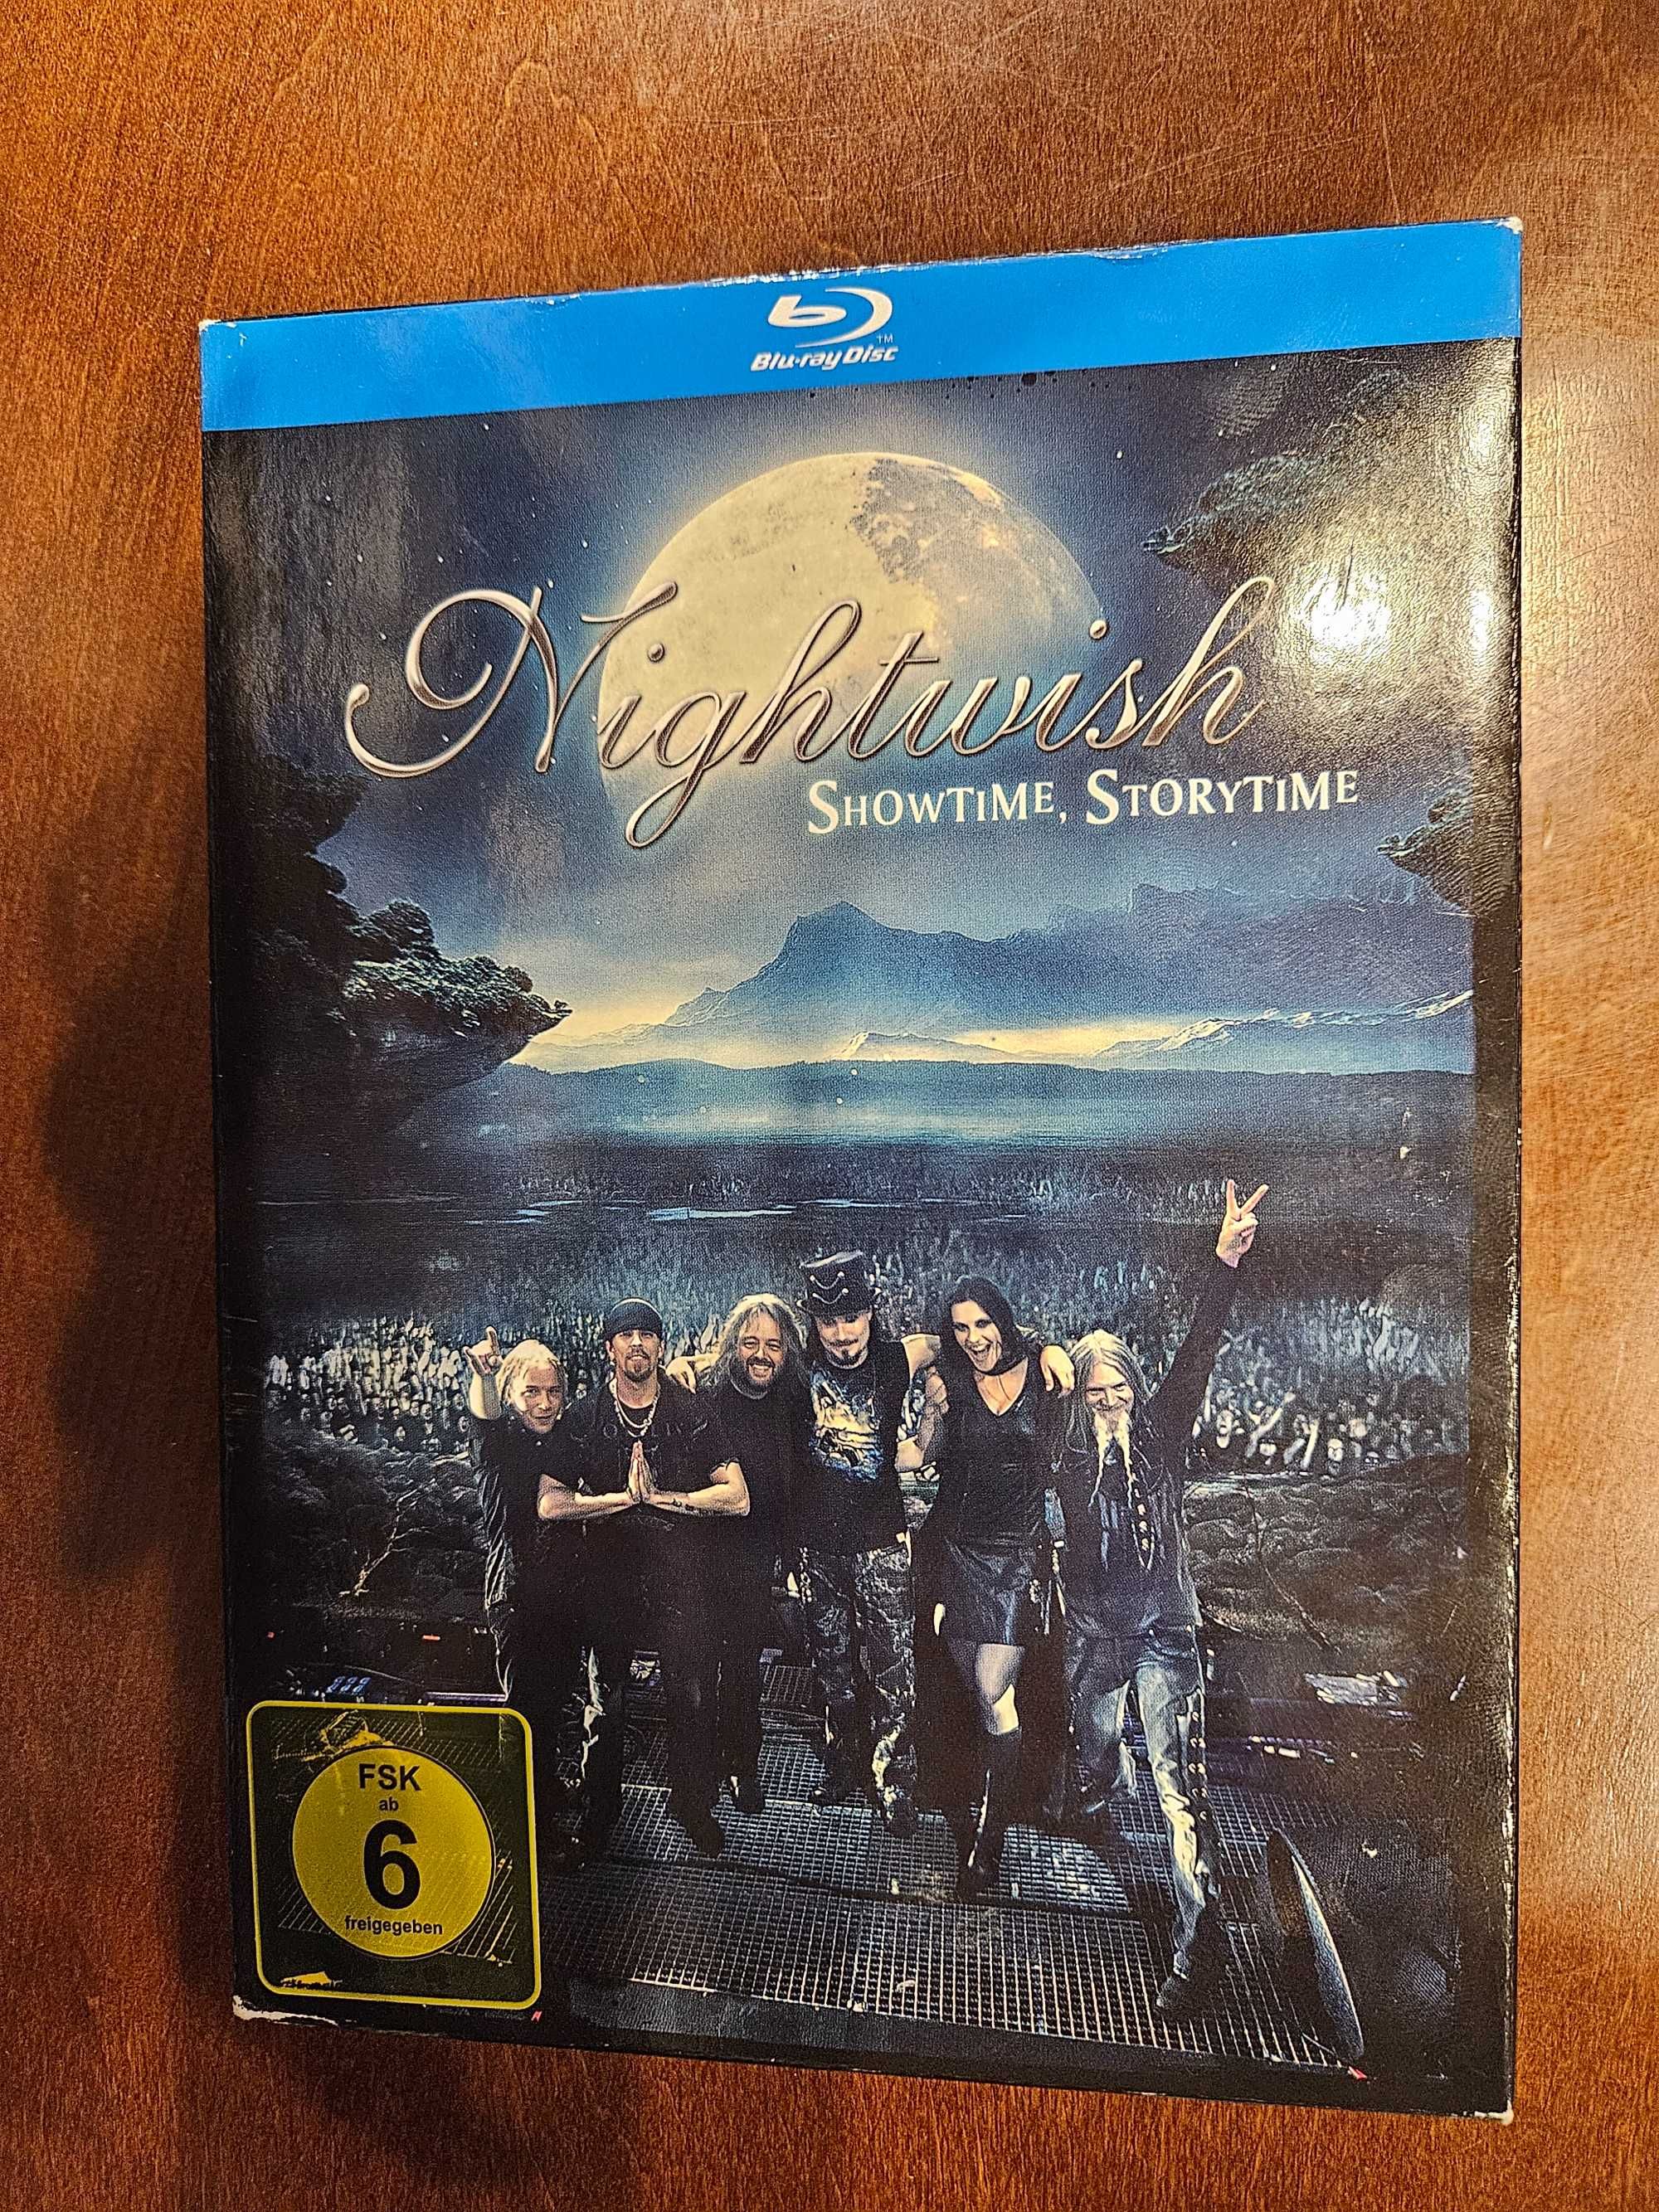 Bd Nightwish Showtime Storytime Wydanie kolekcjonerskie 2xBD + 2xCD